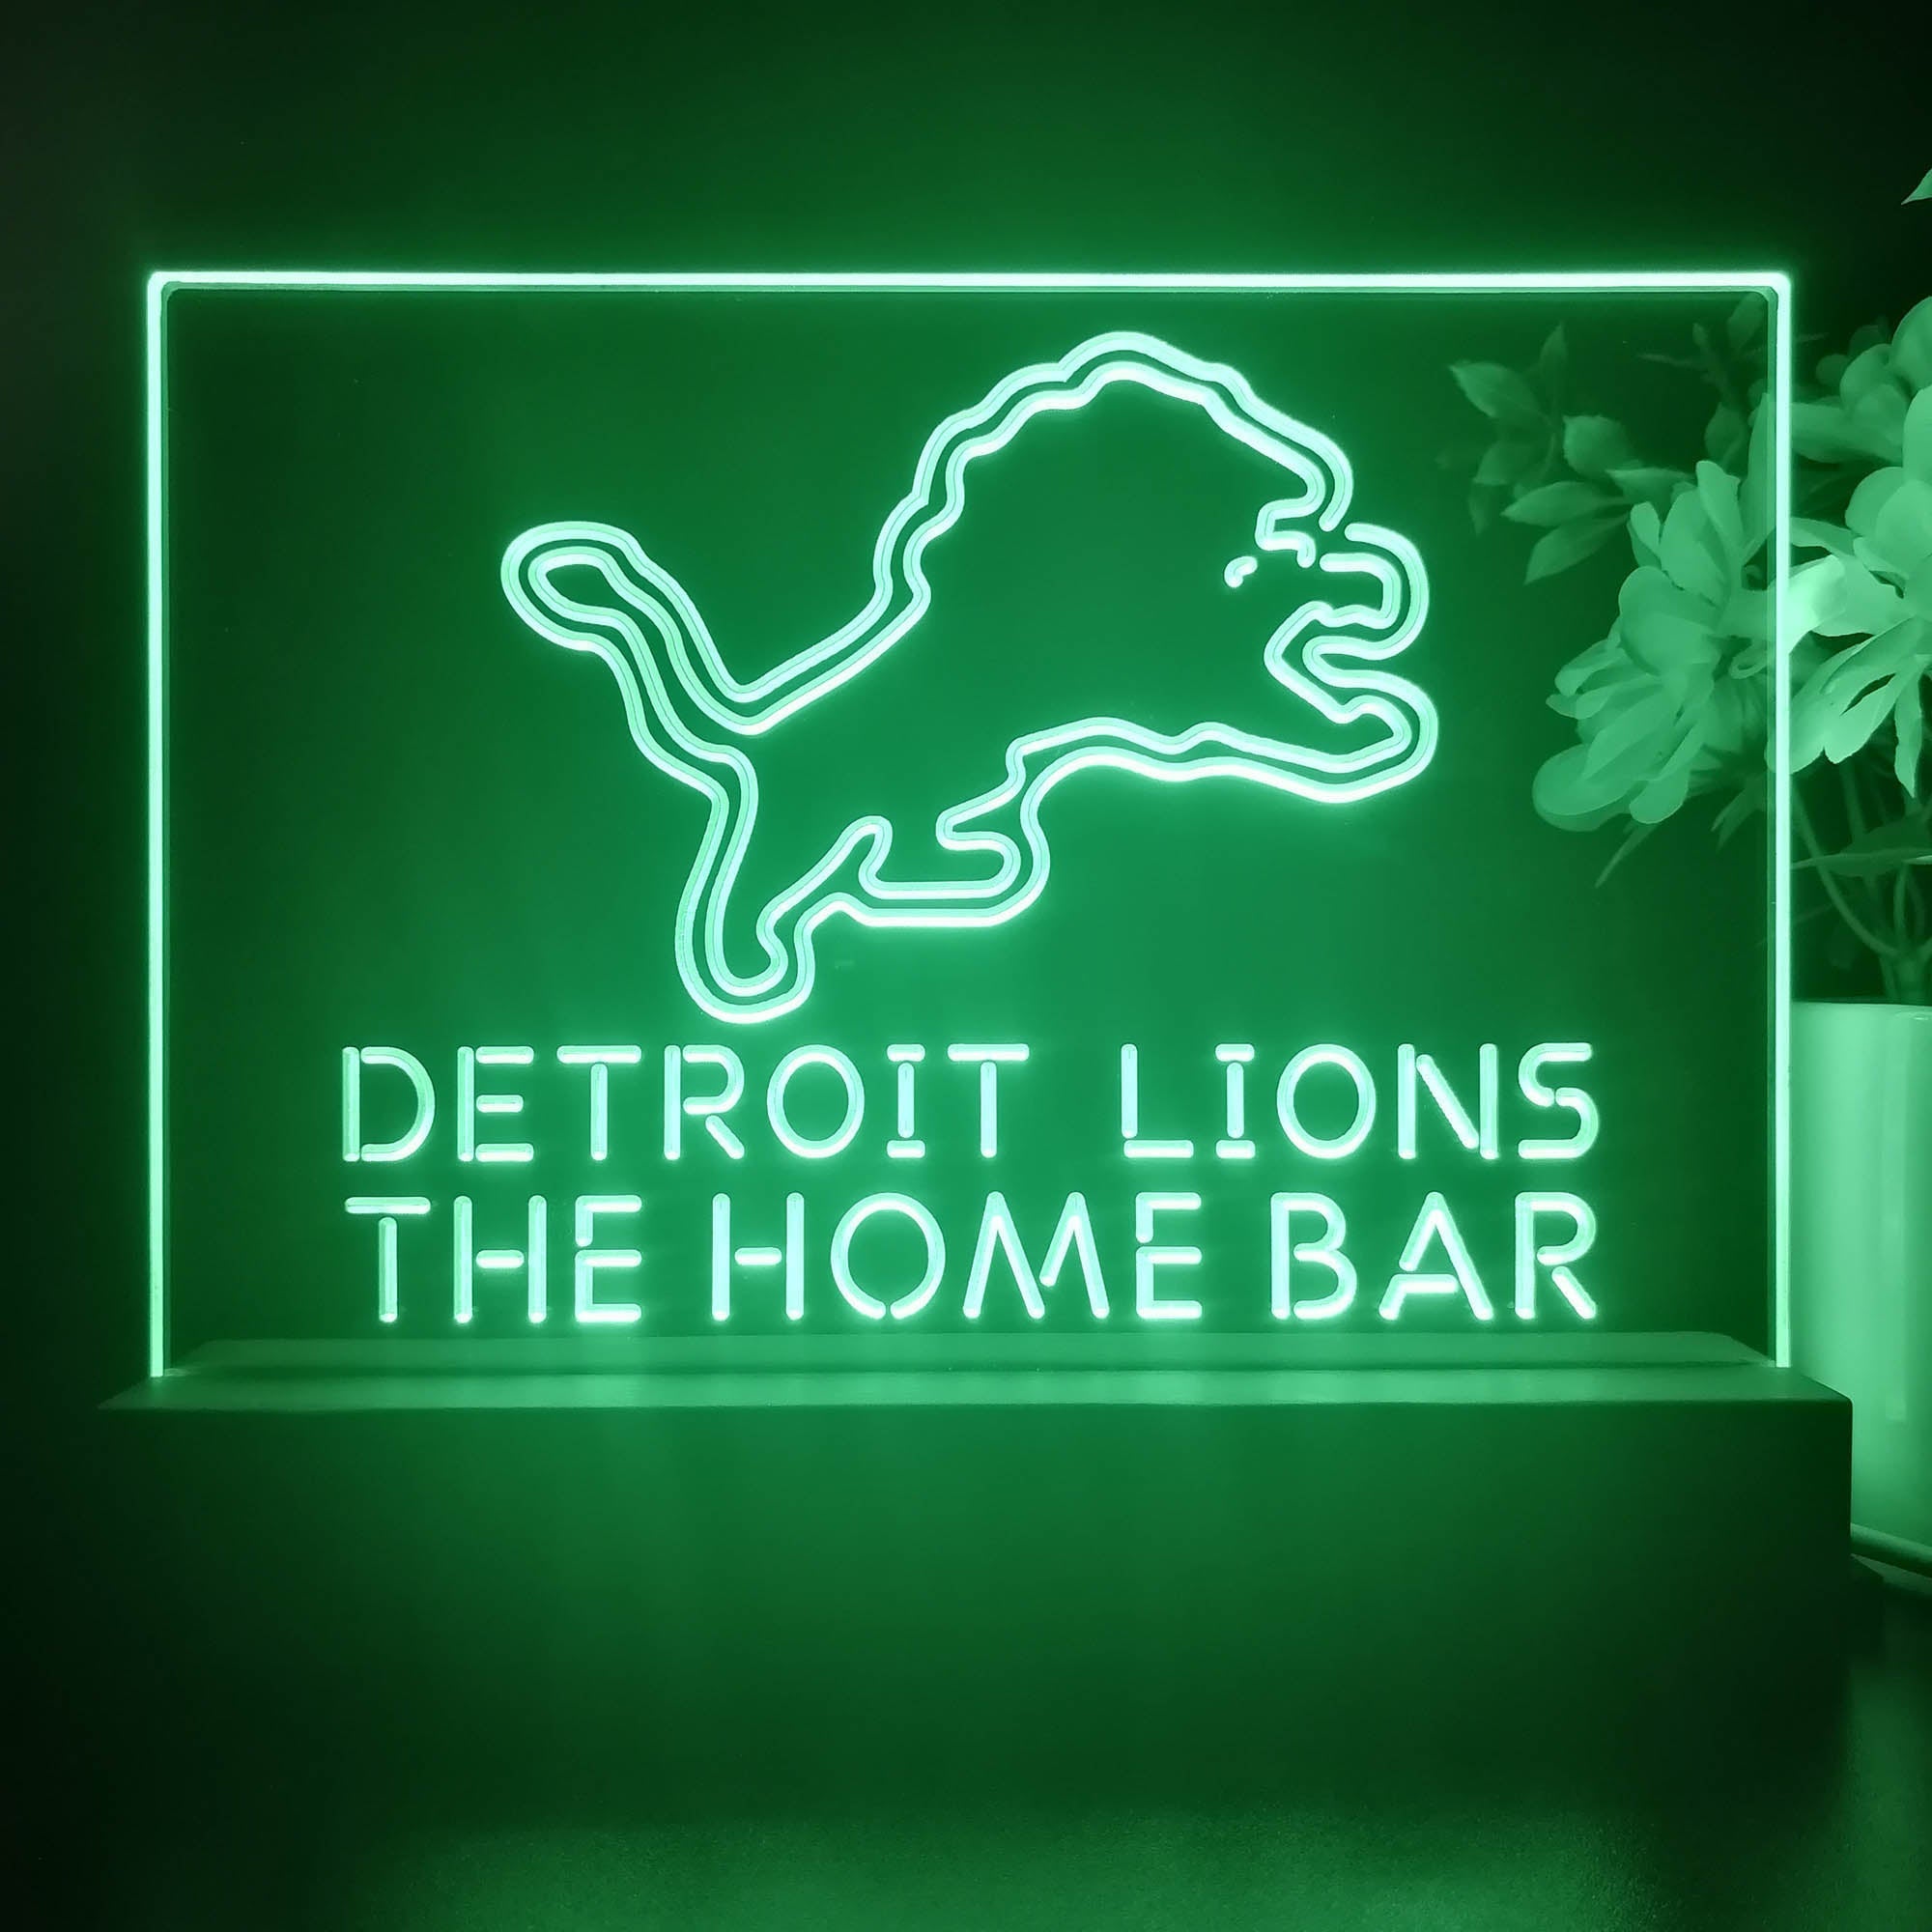 Personalized Detroits Lion Souvenir Neon LED Night Light Sign